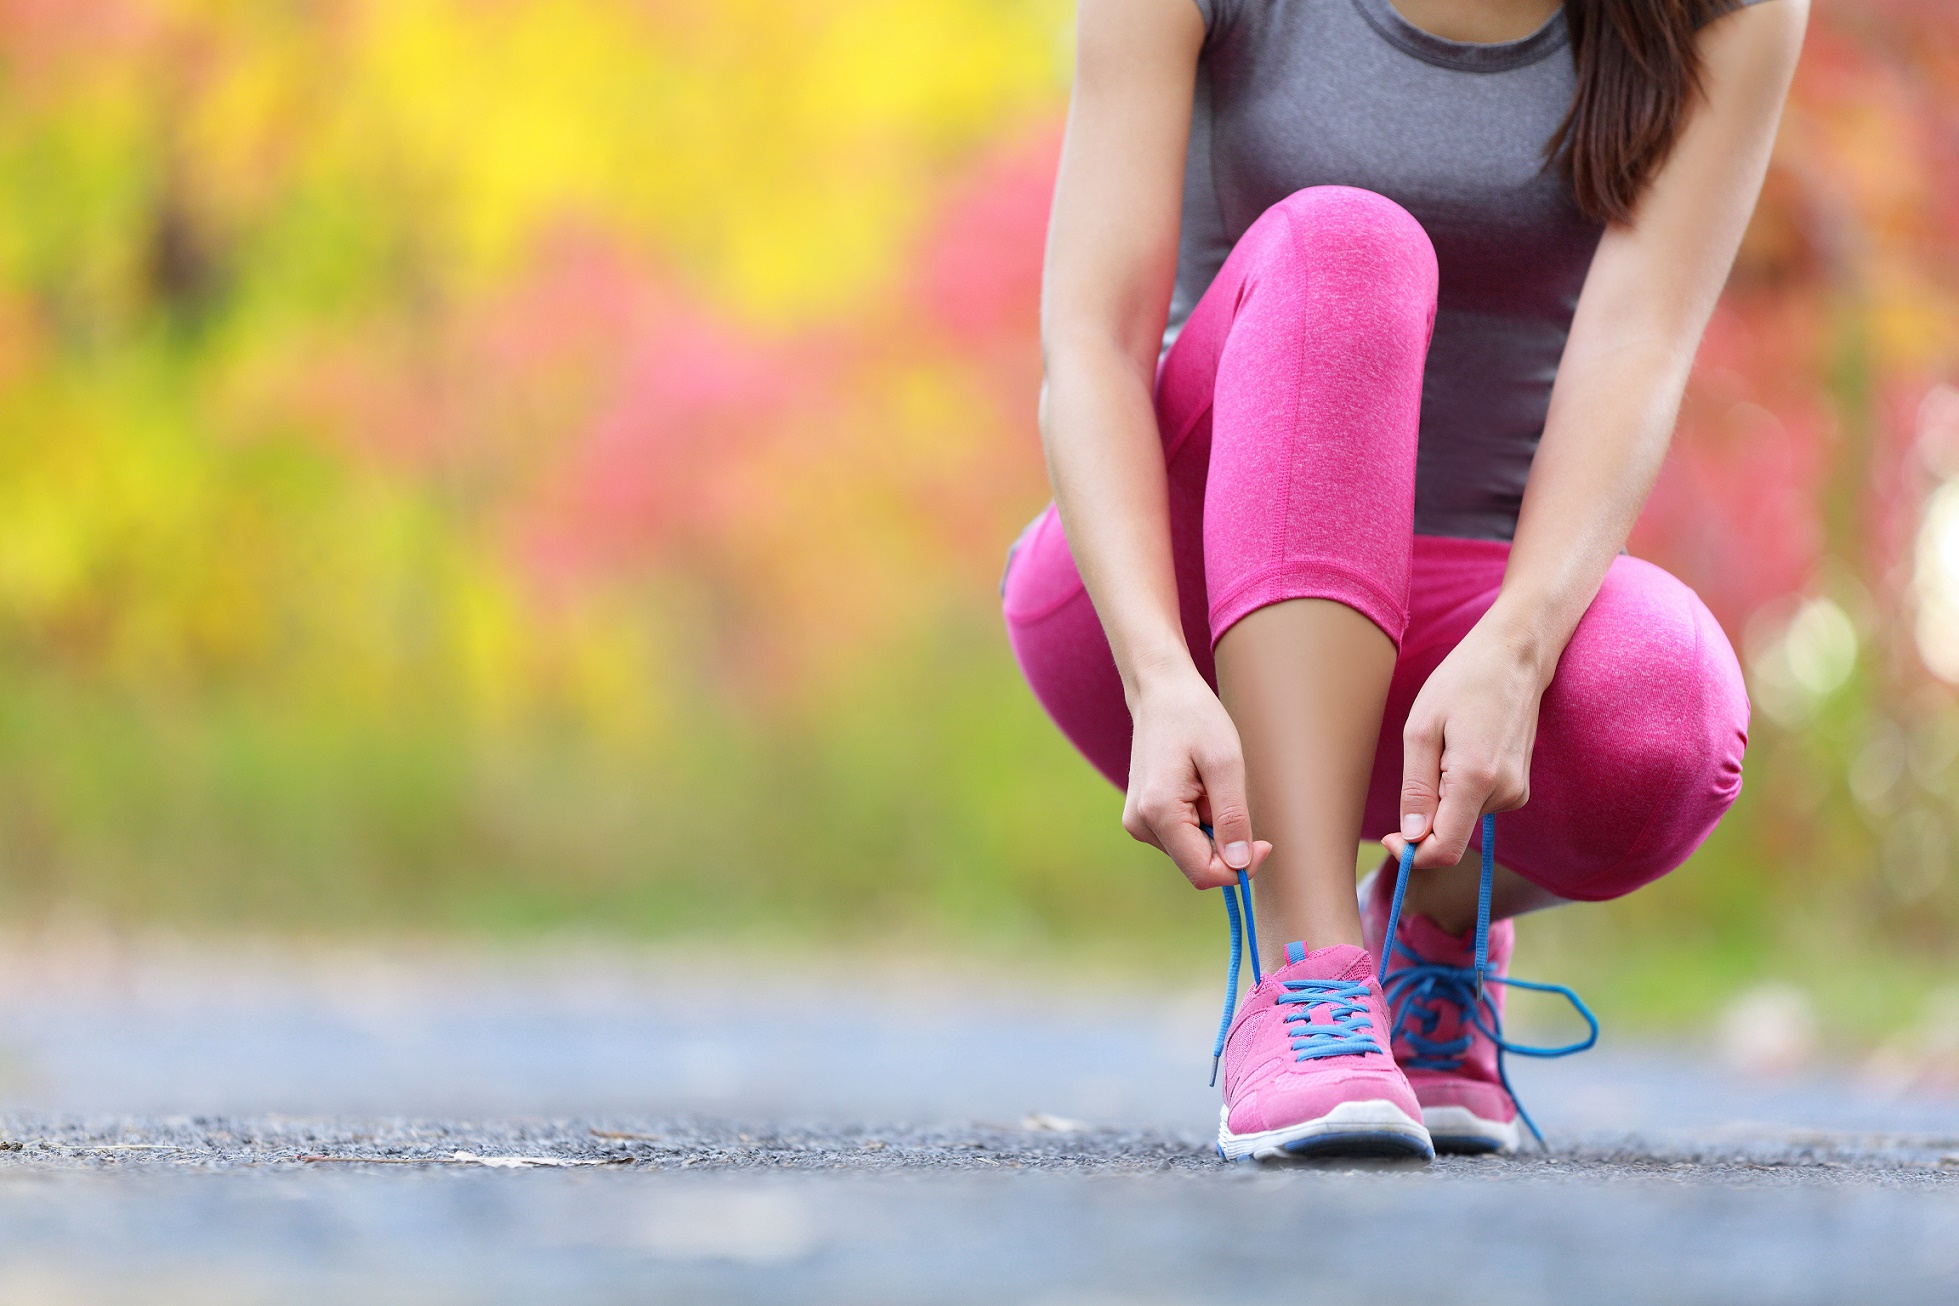  Motivé pour un jogging en 2017 ? © Maridav, Shutterstock